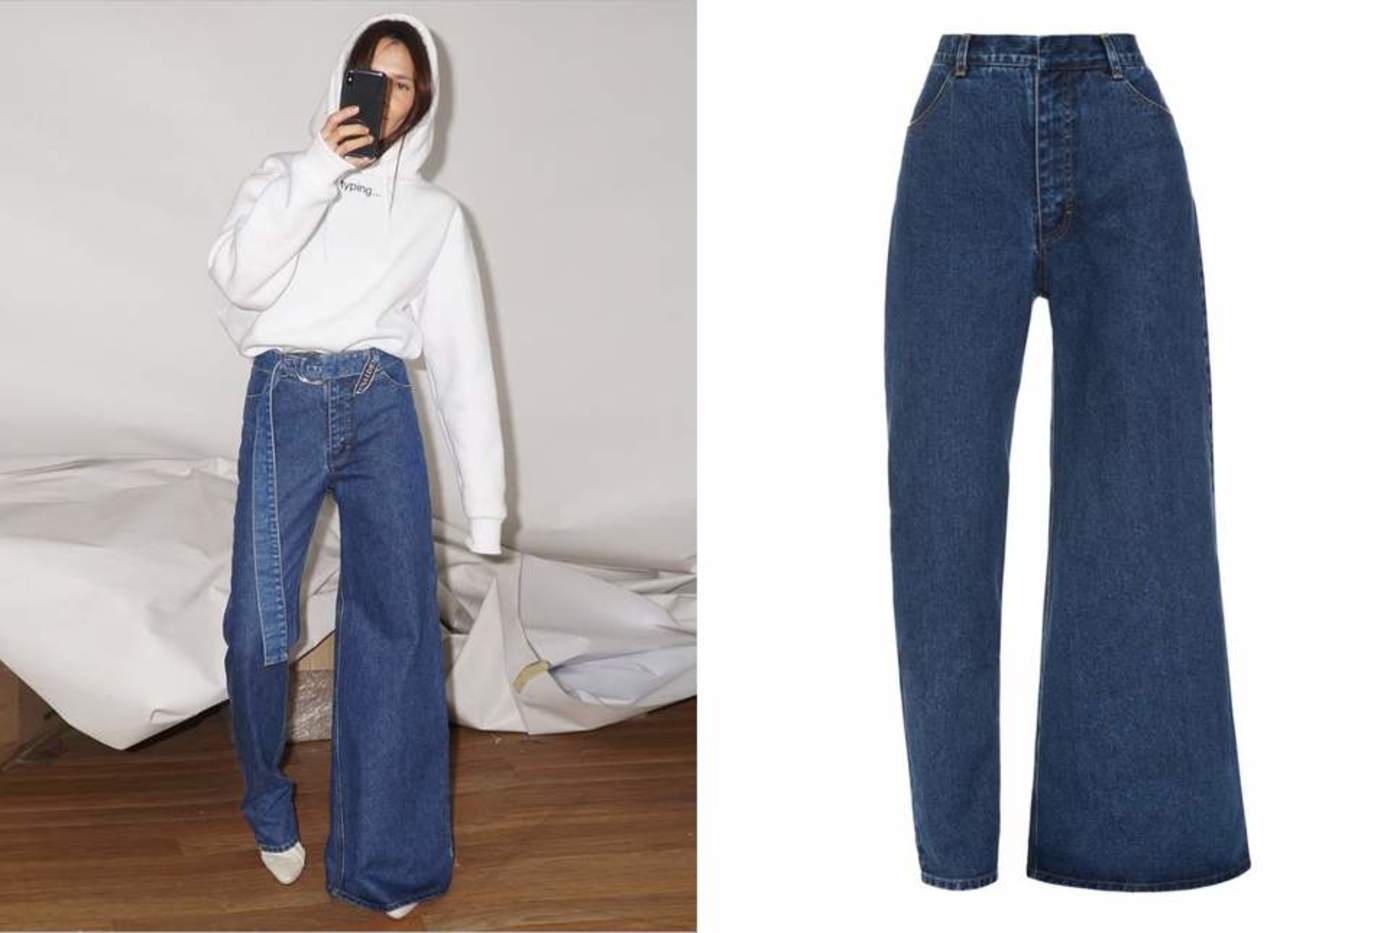 La extraña nueva moda en jeans que ‘nadie pidió’